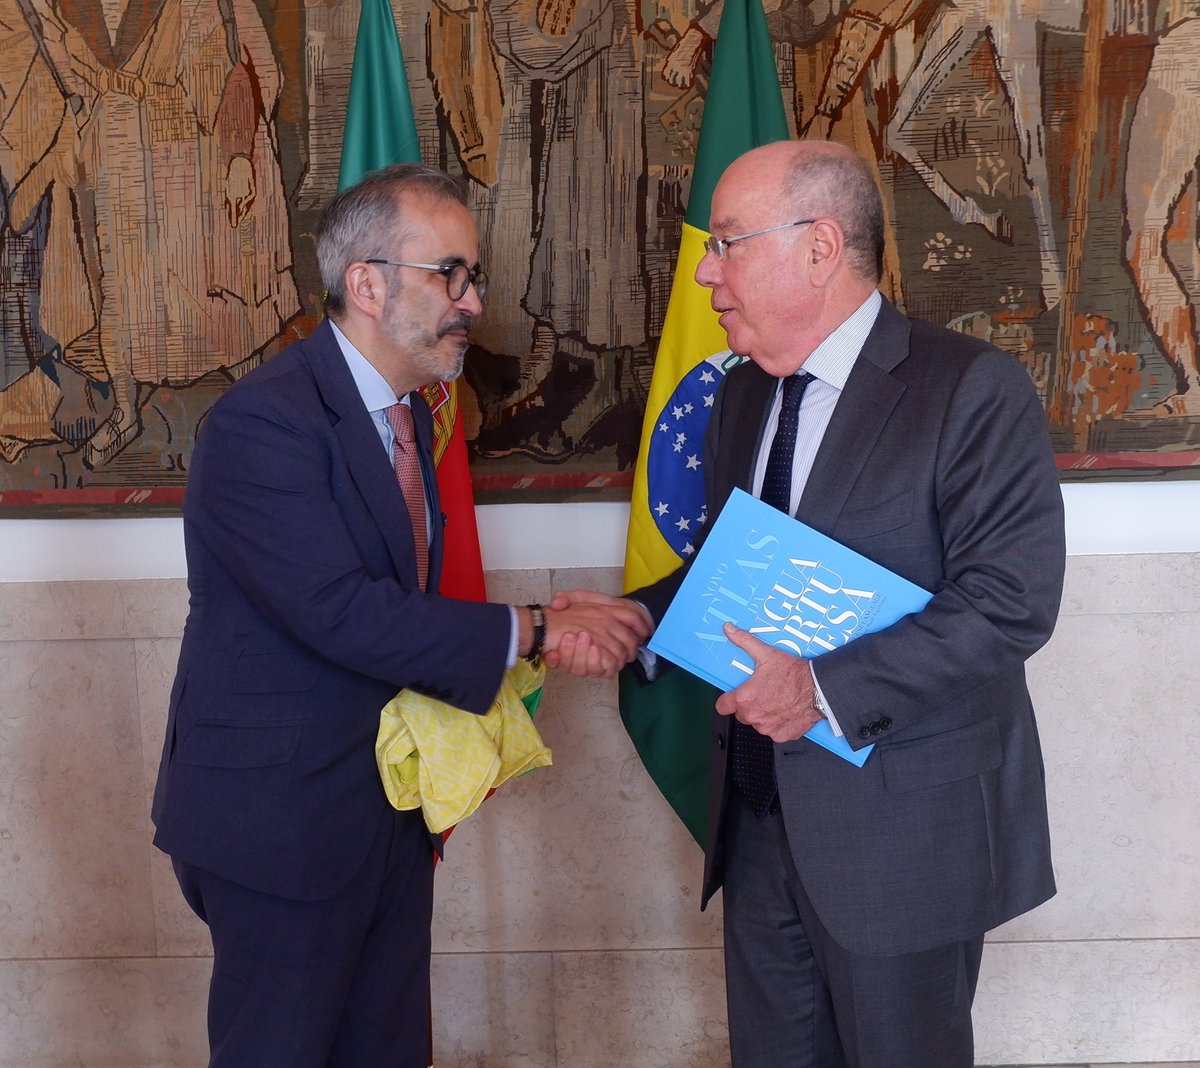 O Ministro Mauro Vieira 🇧🇷 foi recebido hoje em 🇵🇹 pelo MNE, @PauloRangel_pt . Trataram da agenda bilateral 🇧🇷-🇵🇹 e multilateral, além de @_CPLP, do acordo MERCOSUL-UE, da comunidade iberoamericana e, claro, da nossa participação no G20 a convite do Brasil.